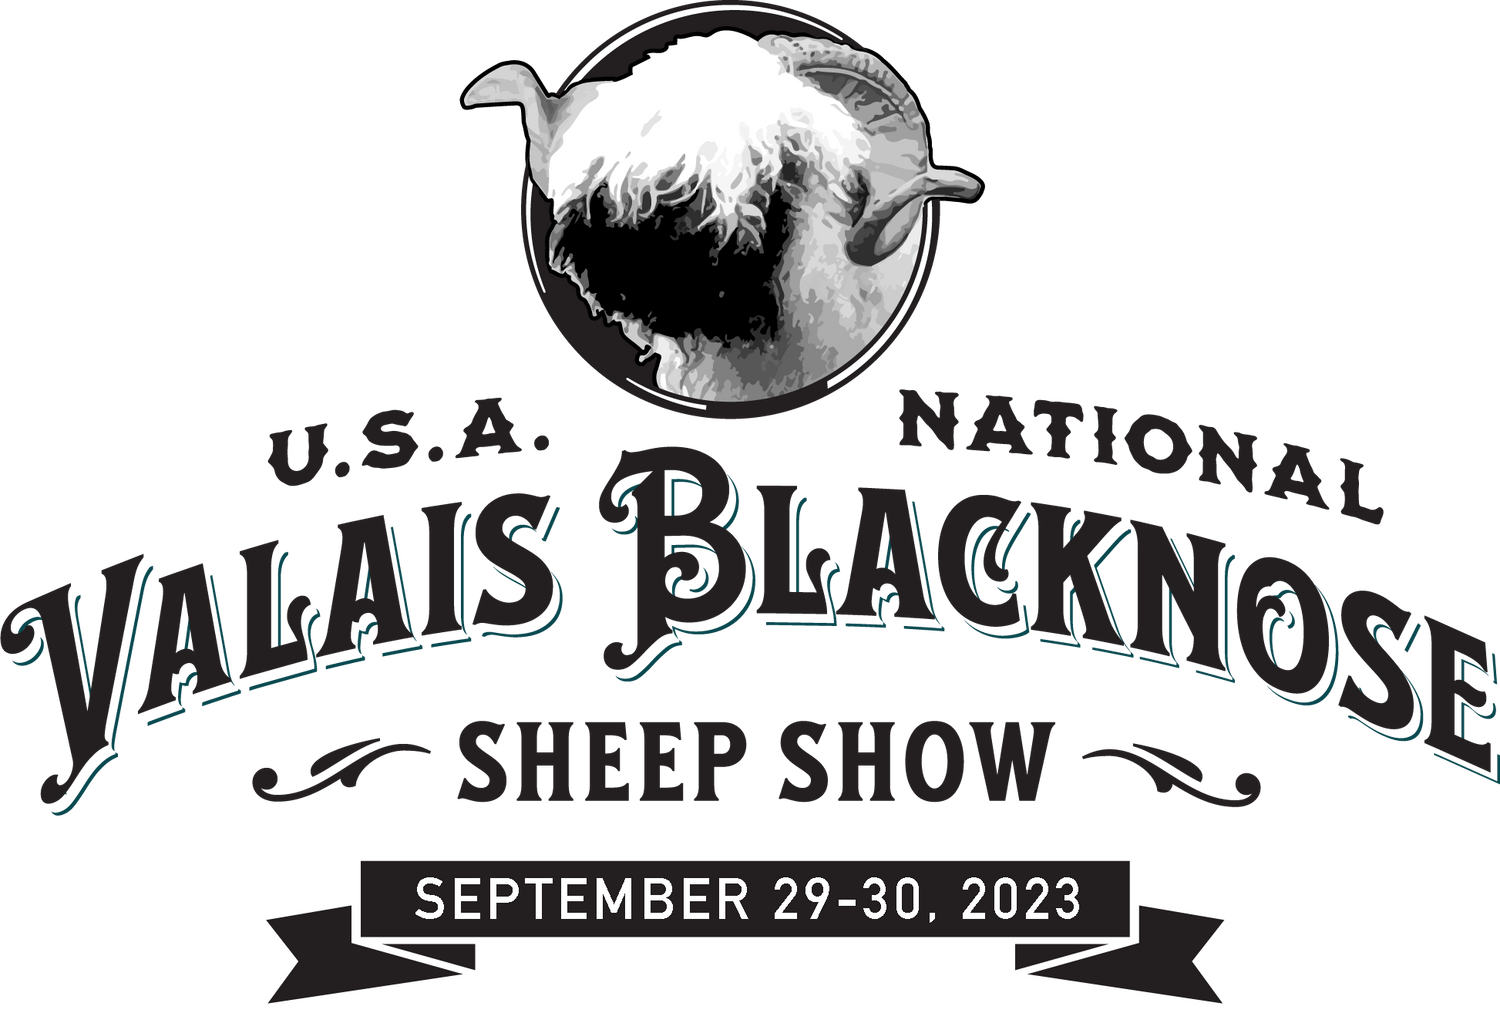 The National Valais Blacknose Sheep Show USA Apparel PRE-ORDER